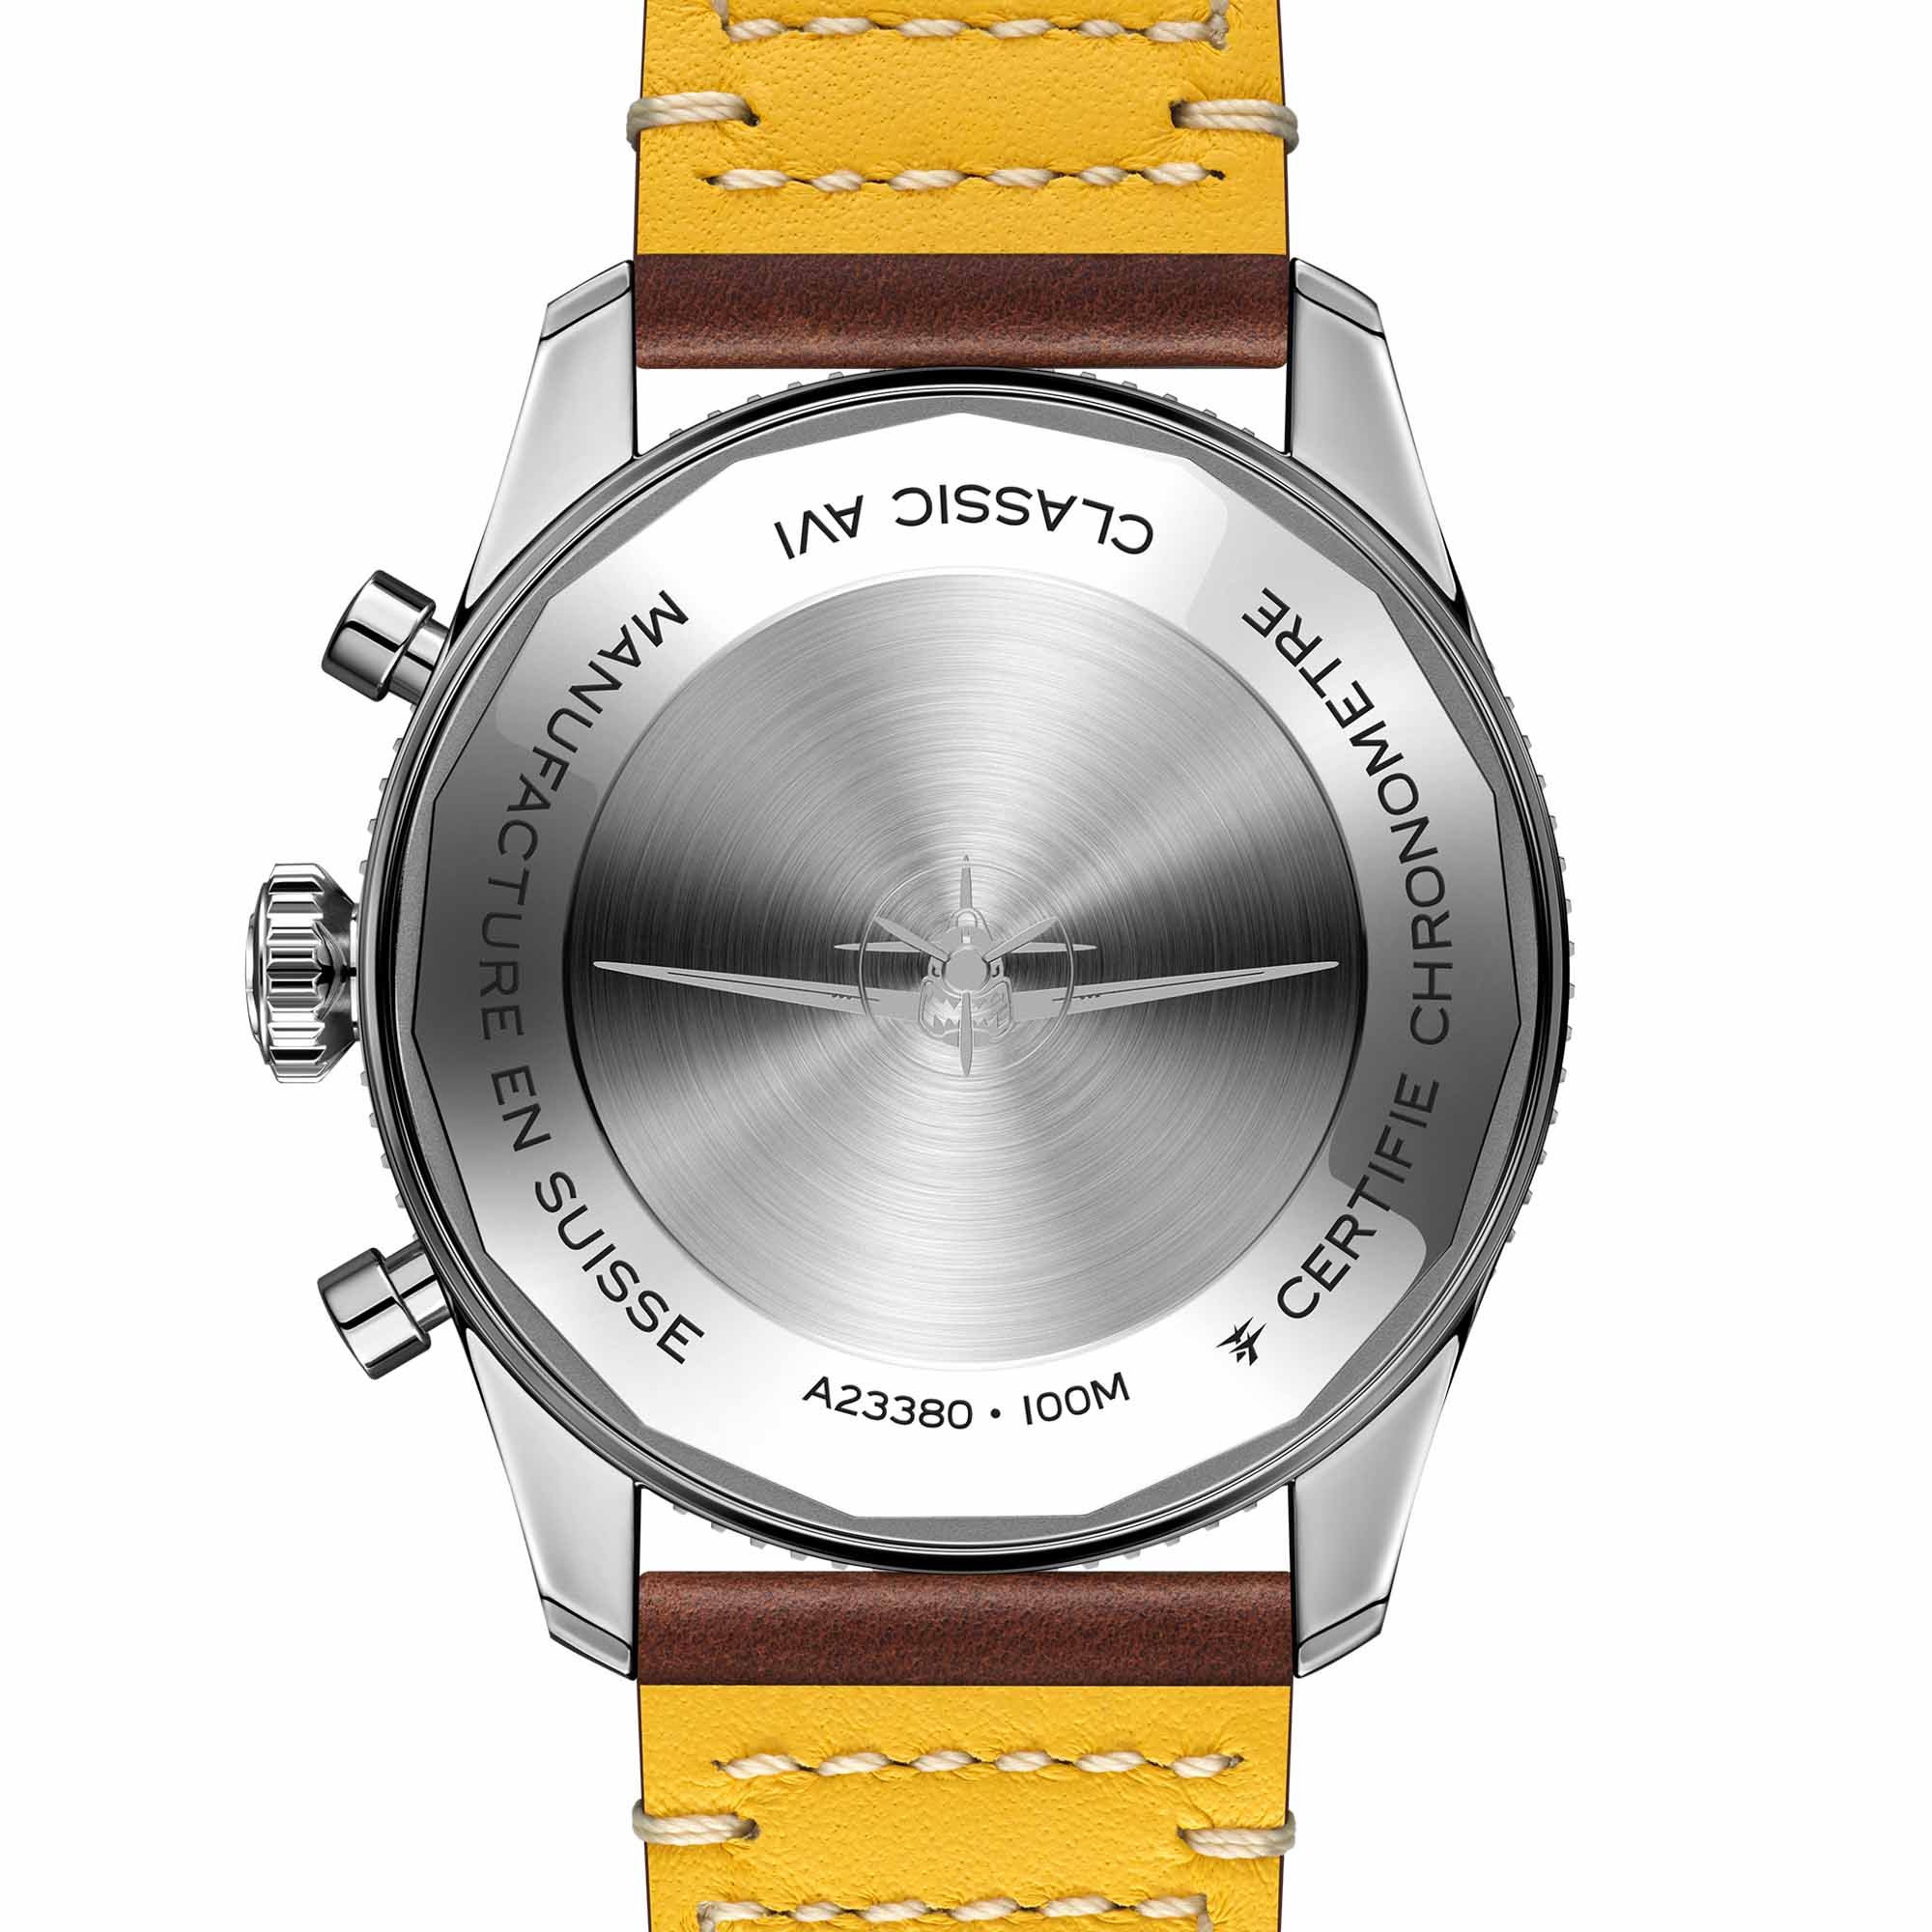 Новинка: часы Breitling Classic AVI Chronograph 42